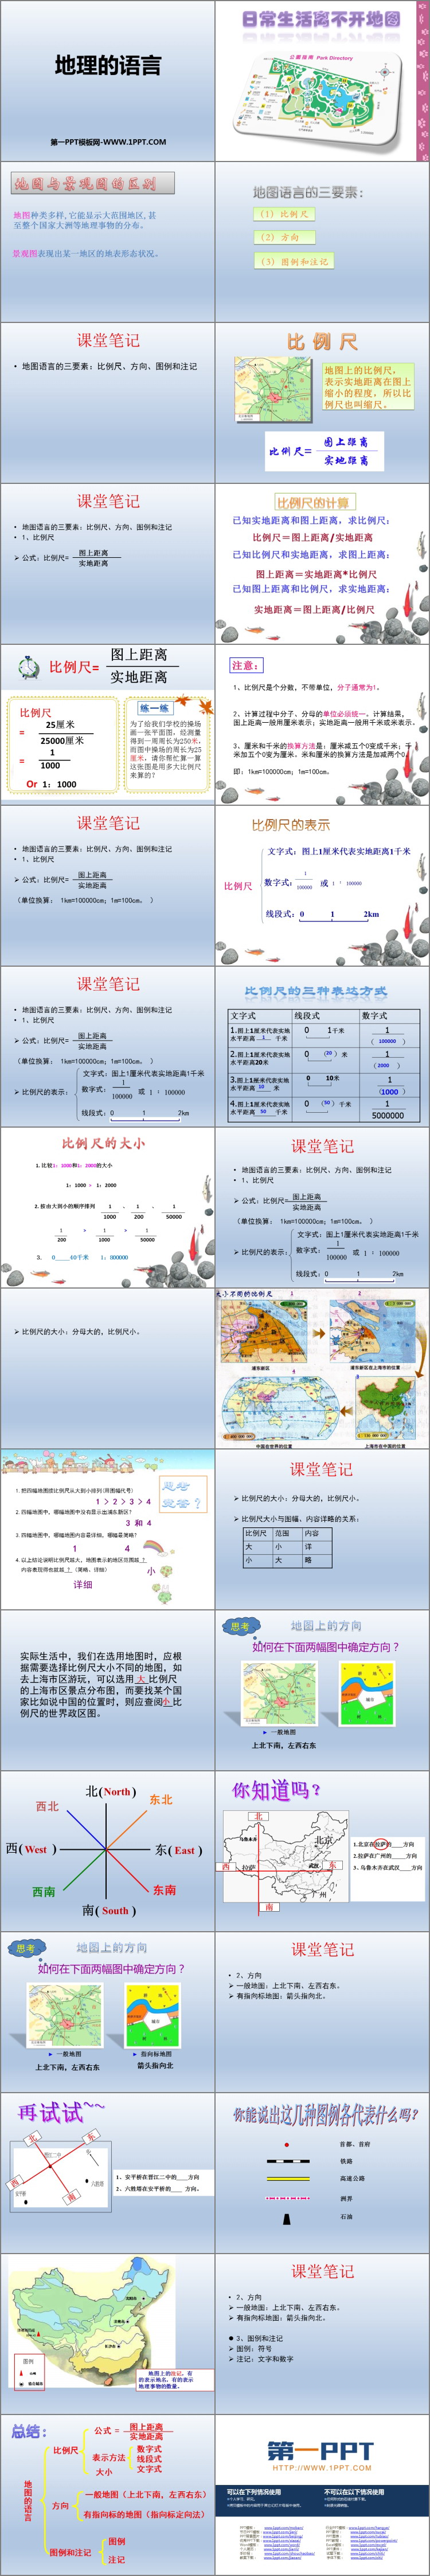 《地图的语言》PPT下载-预览图02